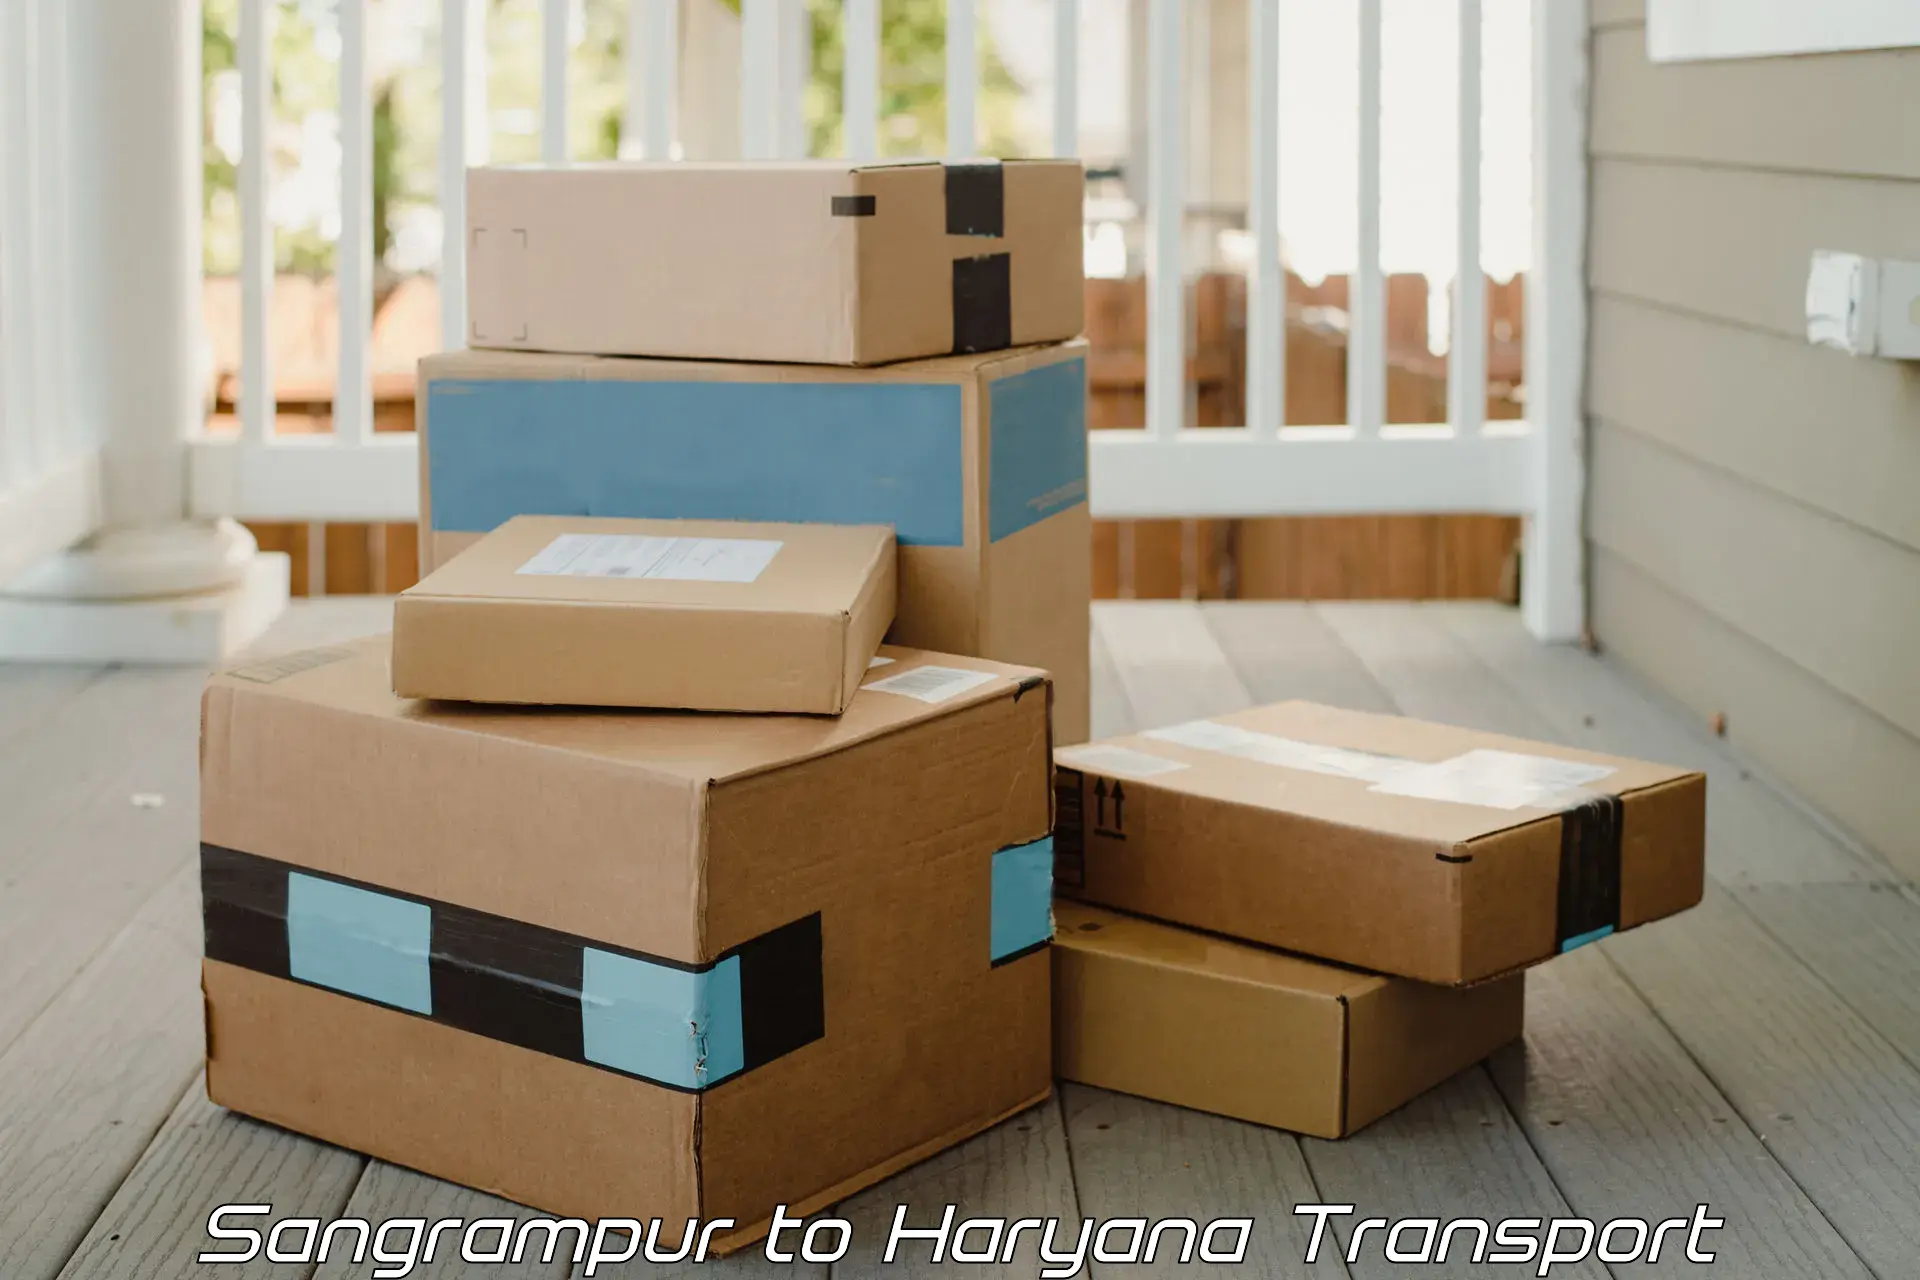 Luggage transport services Sangrampur to Haryana